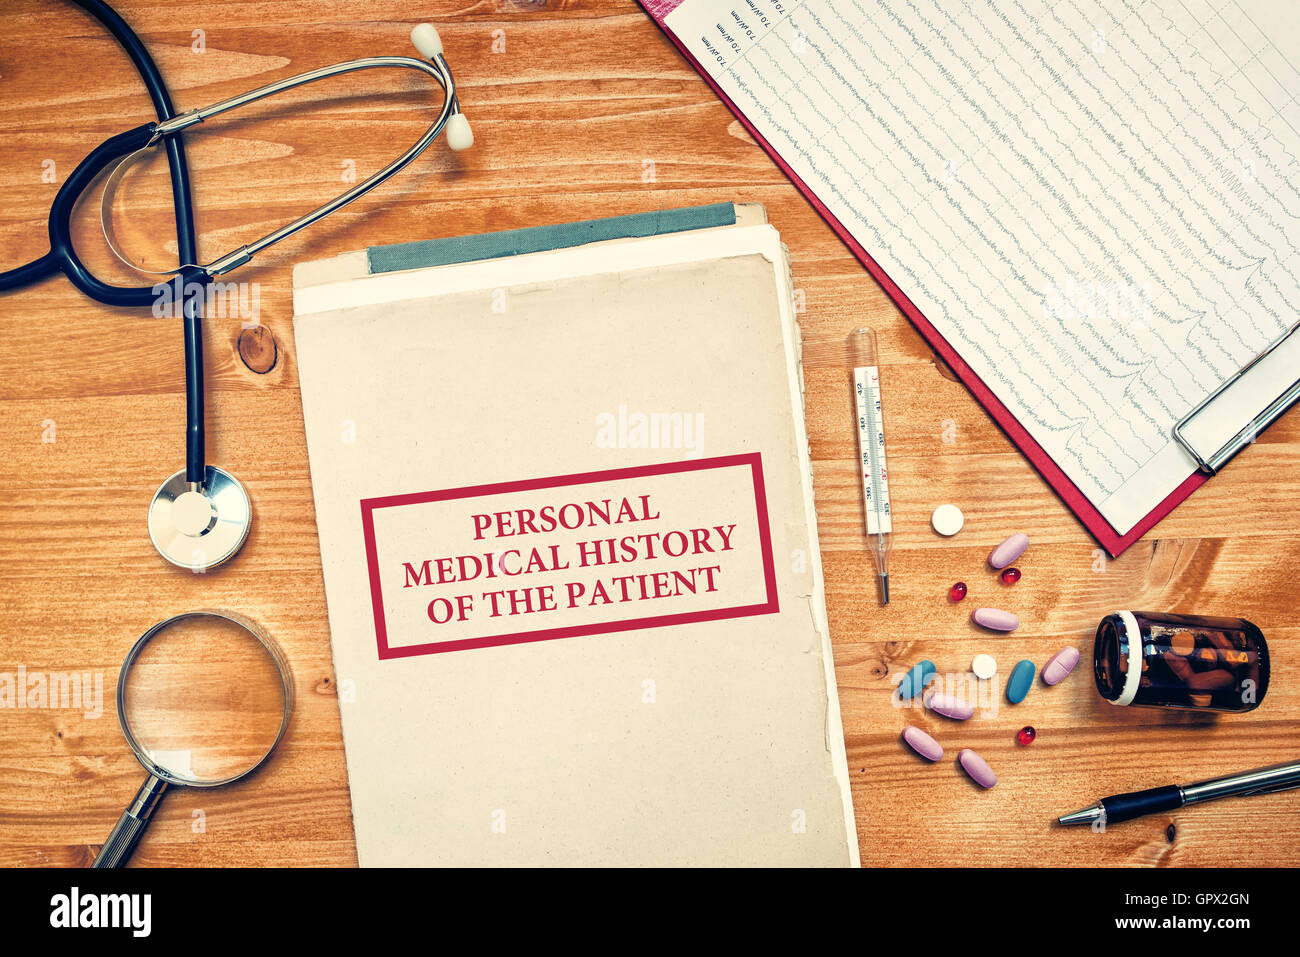 Persönliche Krankengeschichte des Patienten, medizinischen Konzepts mit ärztlicher Arbeit Raum Draufsicht Stockfoto